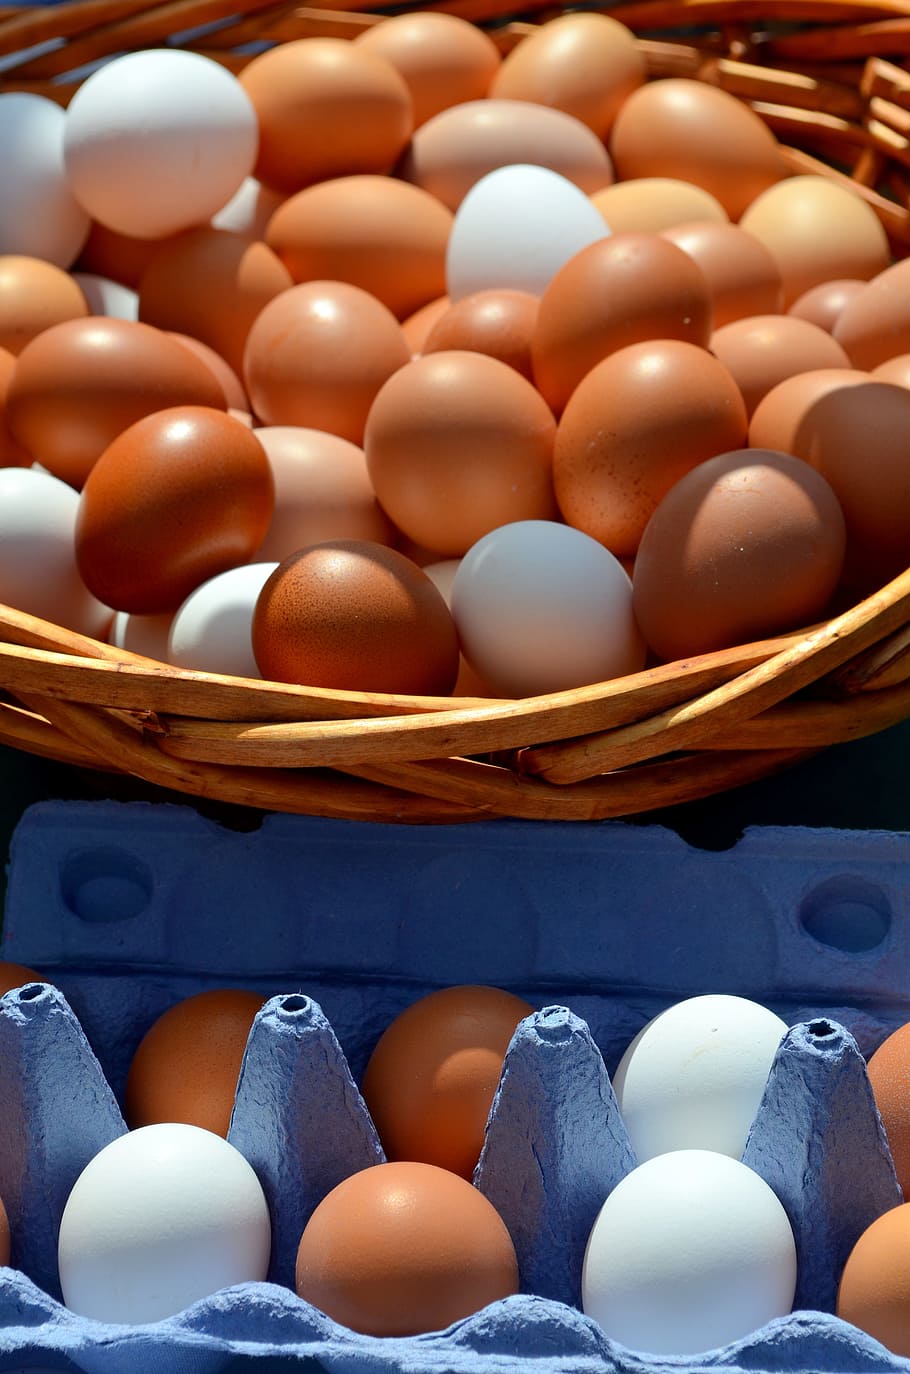 huevo, huevo de gallina, caja de huevos, cierre, cesta acogedora, cartón de huevos, huevo marrón, huevo crudo, huevos marrones, comida